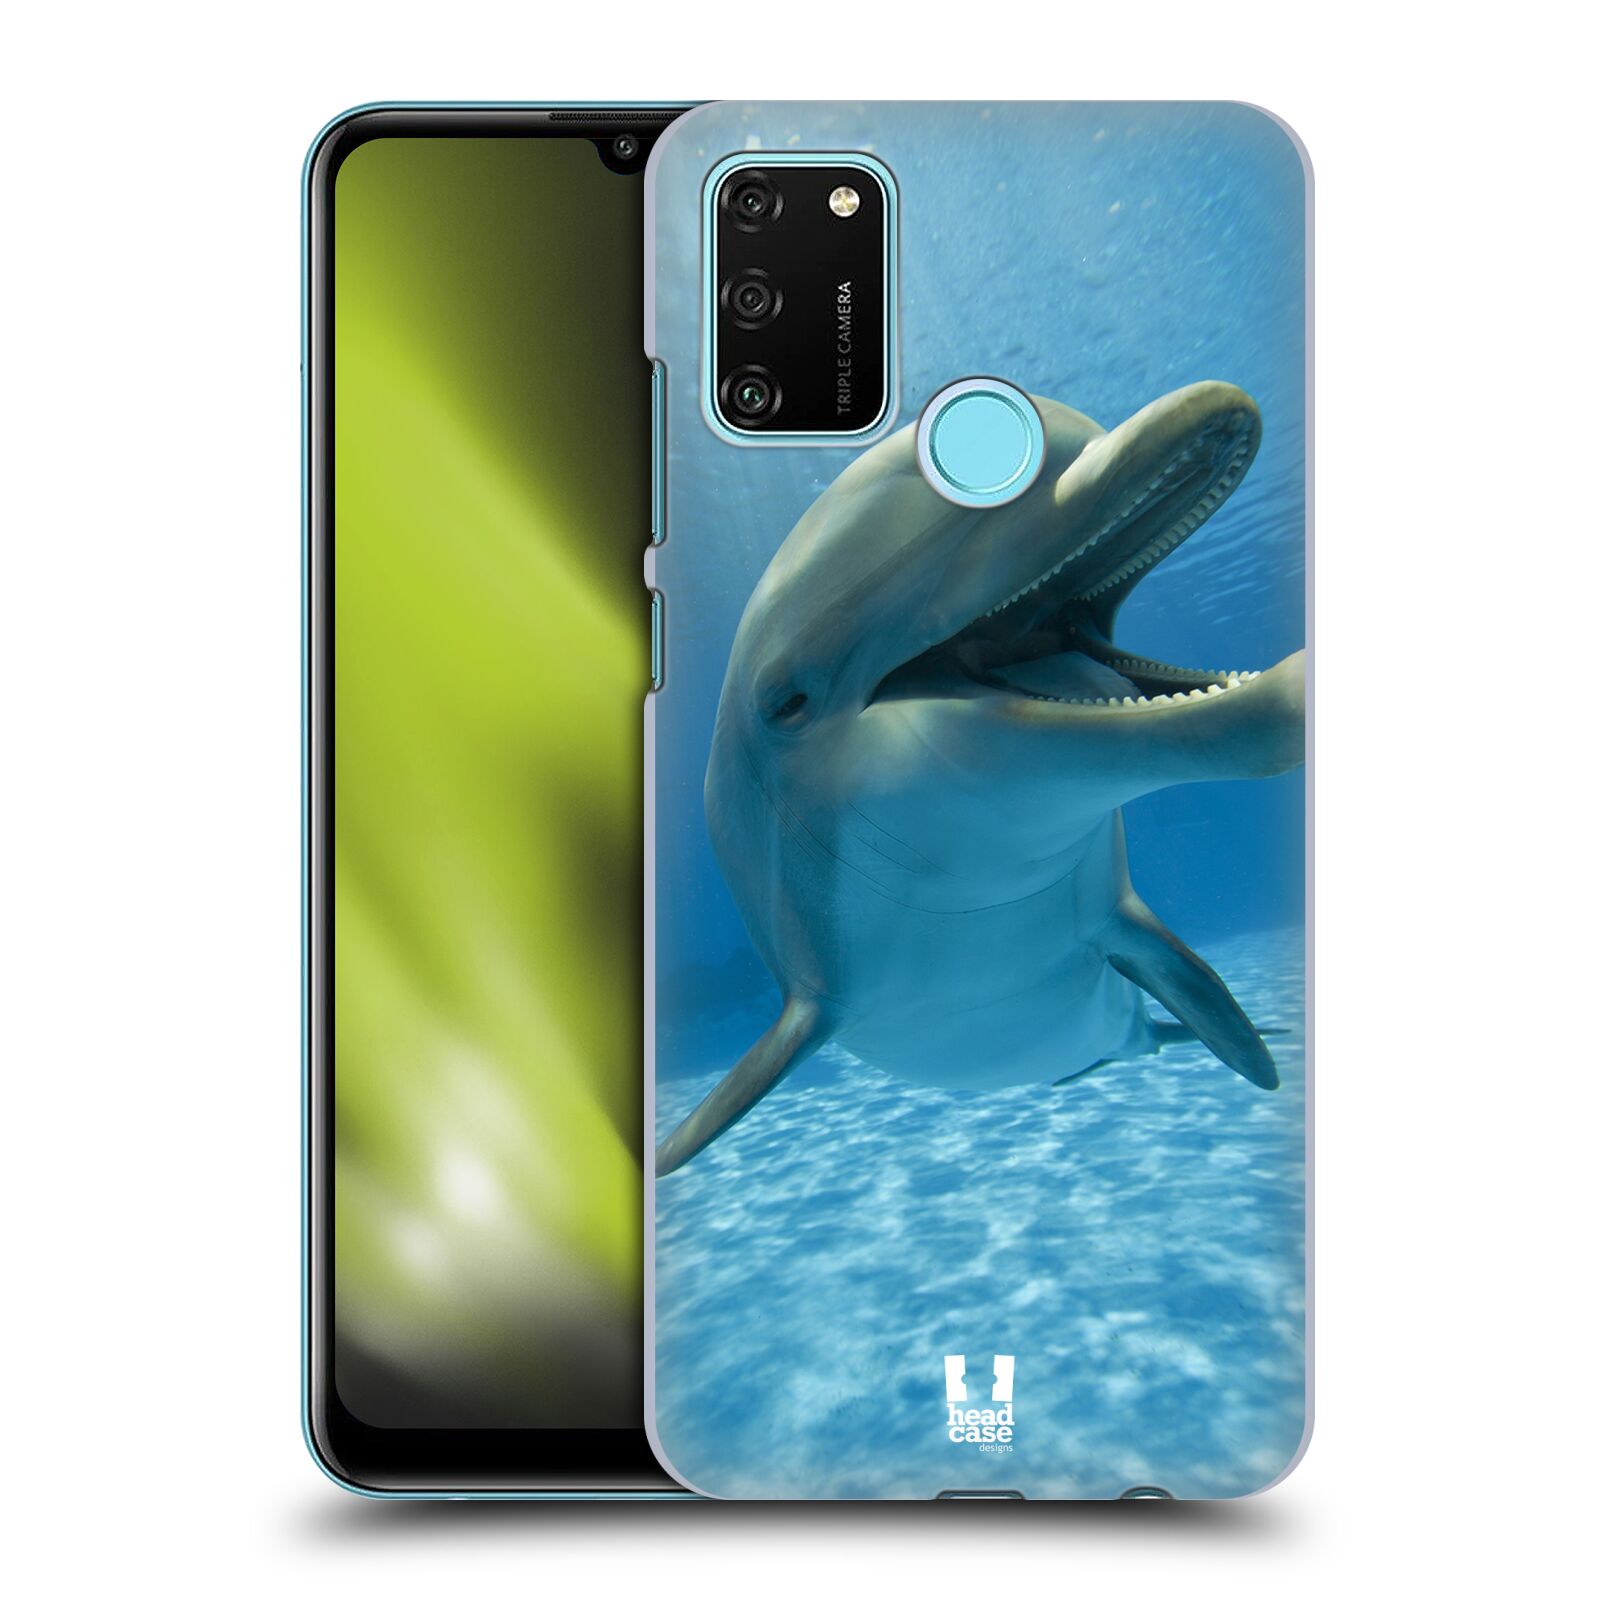 Zadní obal pro mobil Honor 9A - HEAD CASE - Svět zvířat delfín v moři